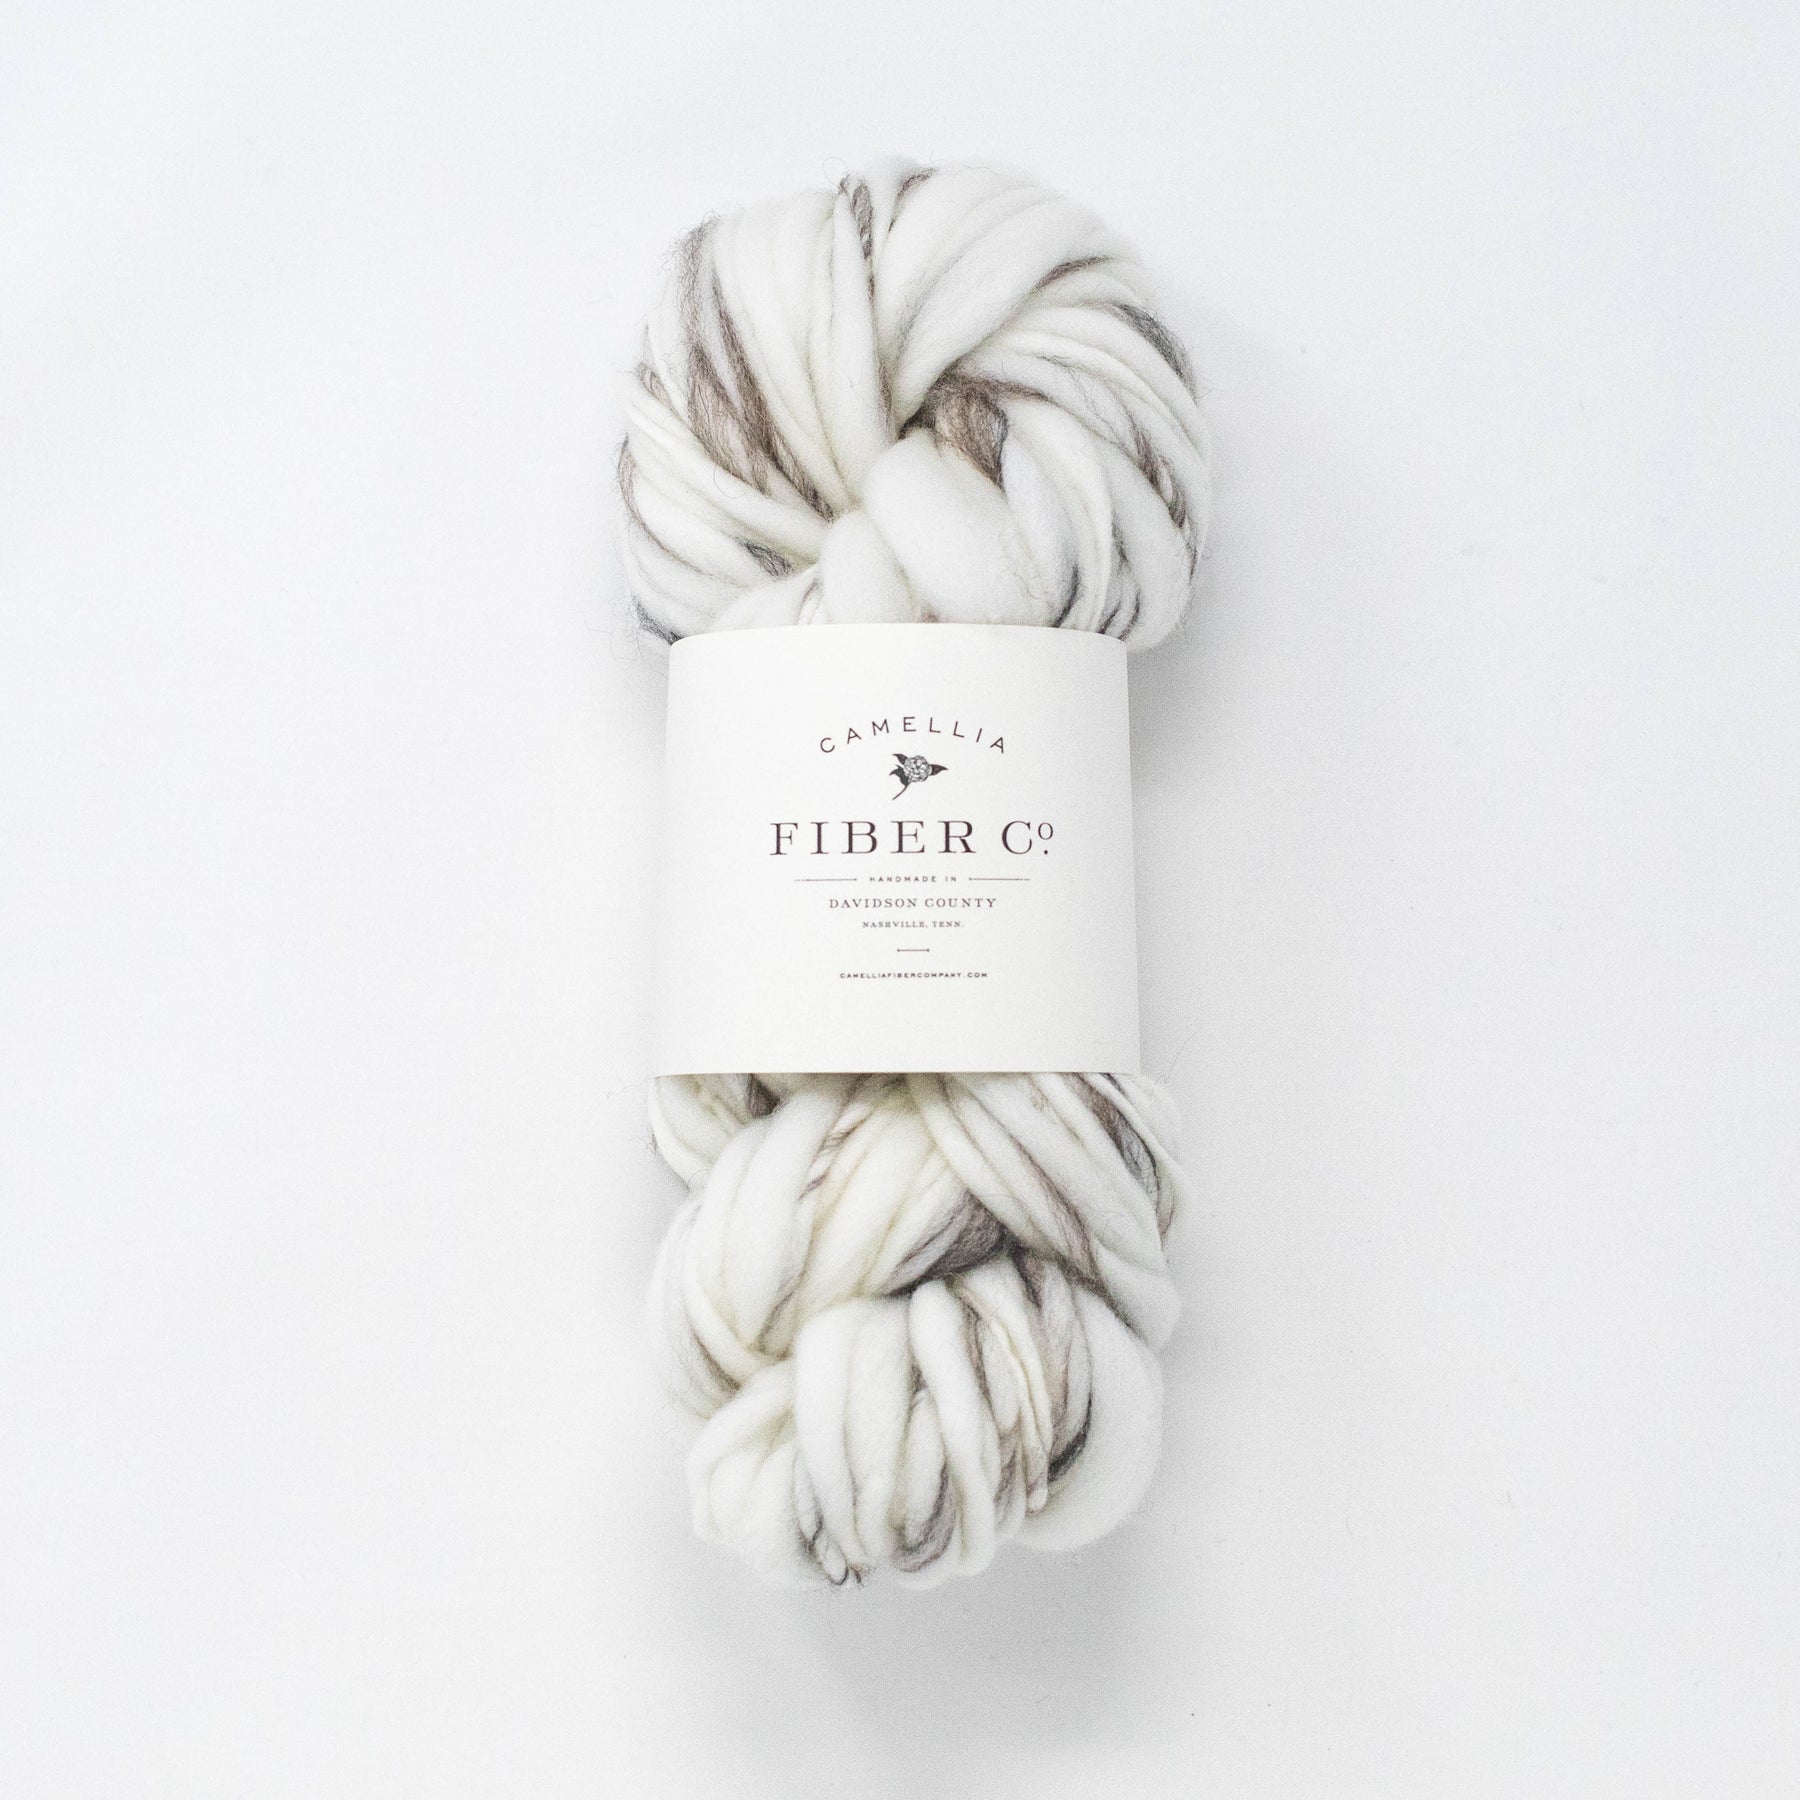 Camellia Fiber Company - Yarn, Knitting, Handspun Yarns